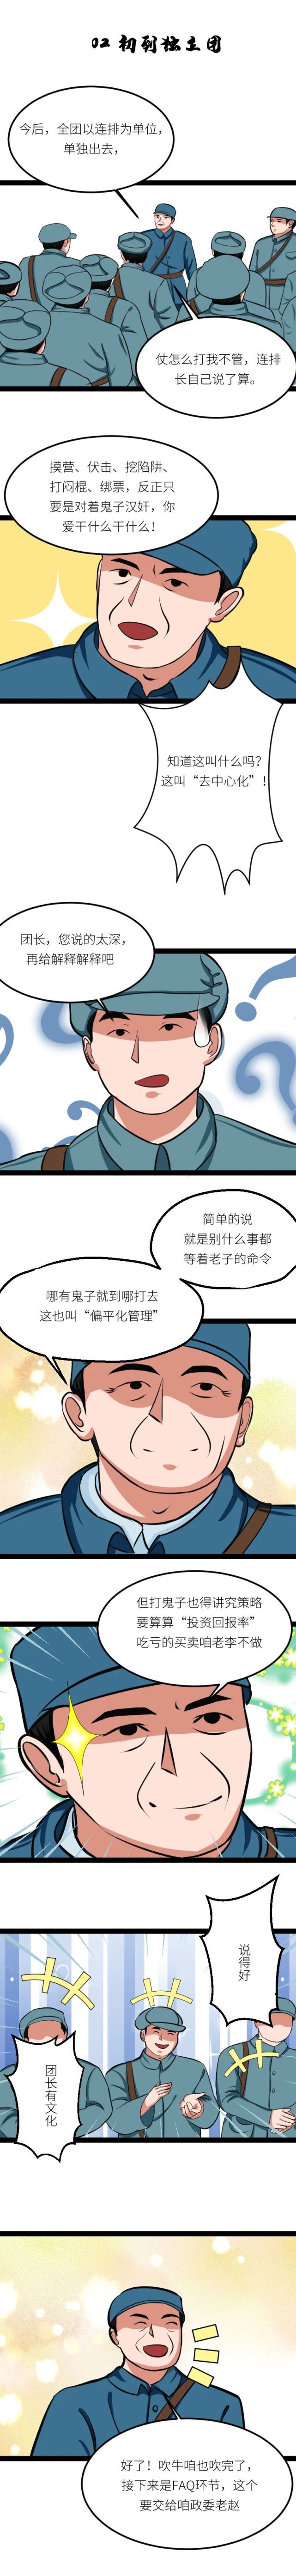 漫画 李云龙"玩互联网,憋住请别笑!